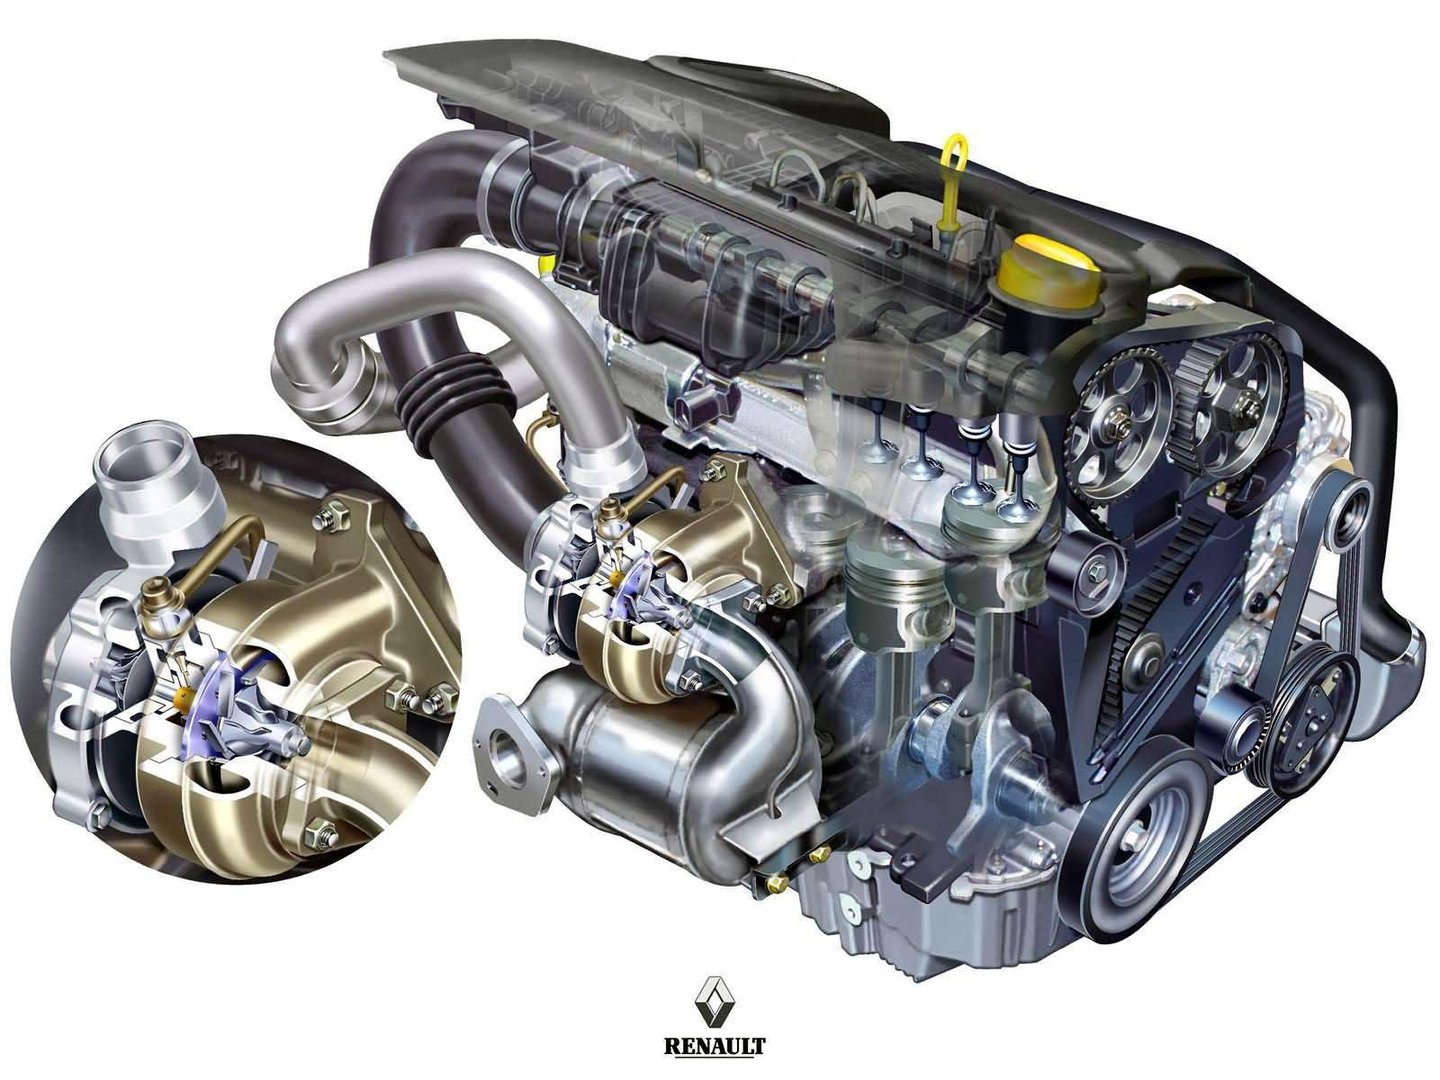 Novo 1.7 dCi. Revolução nos diesel da Renault Observador